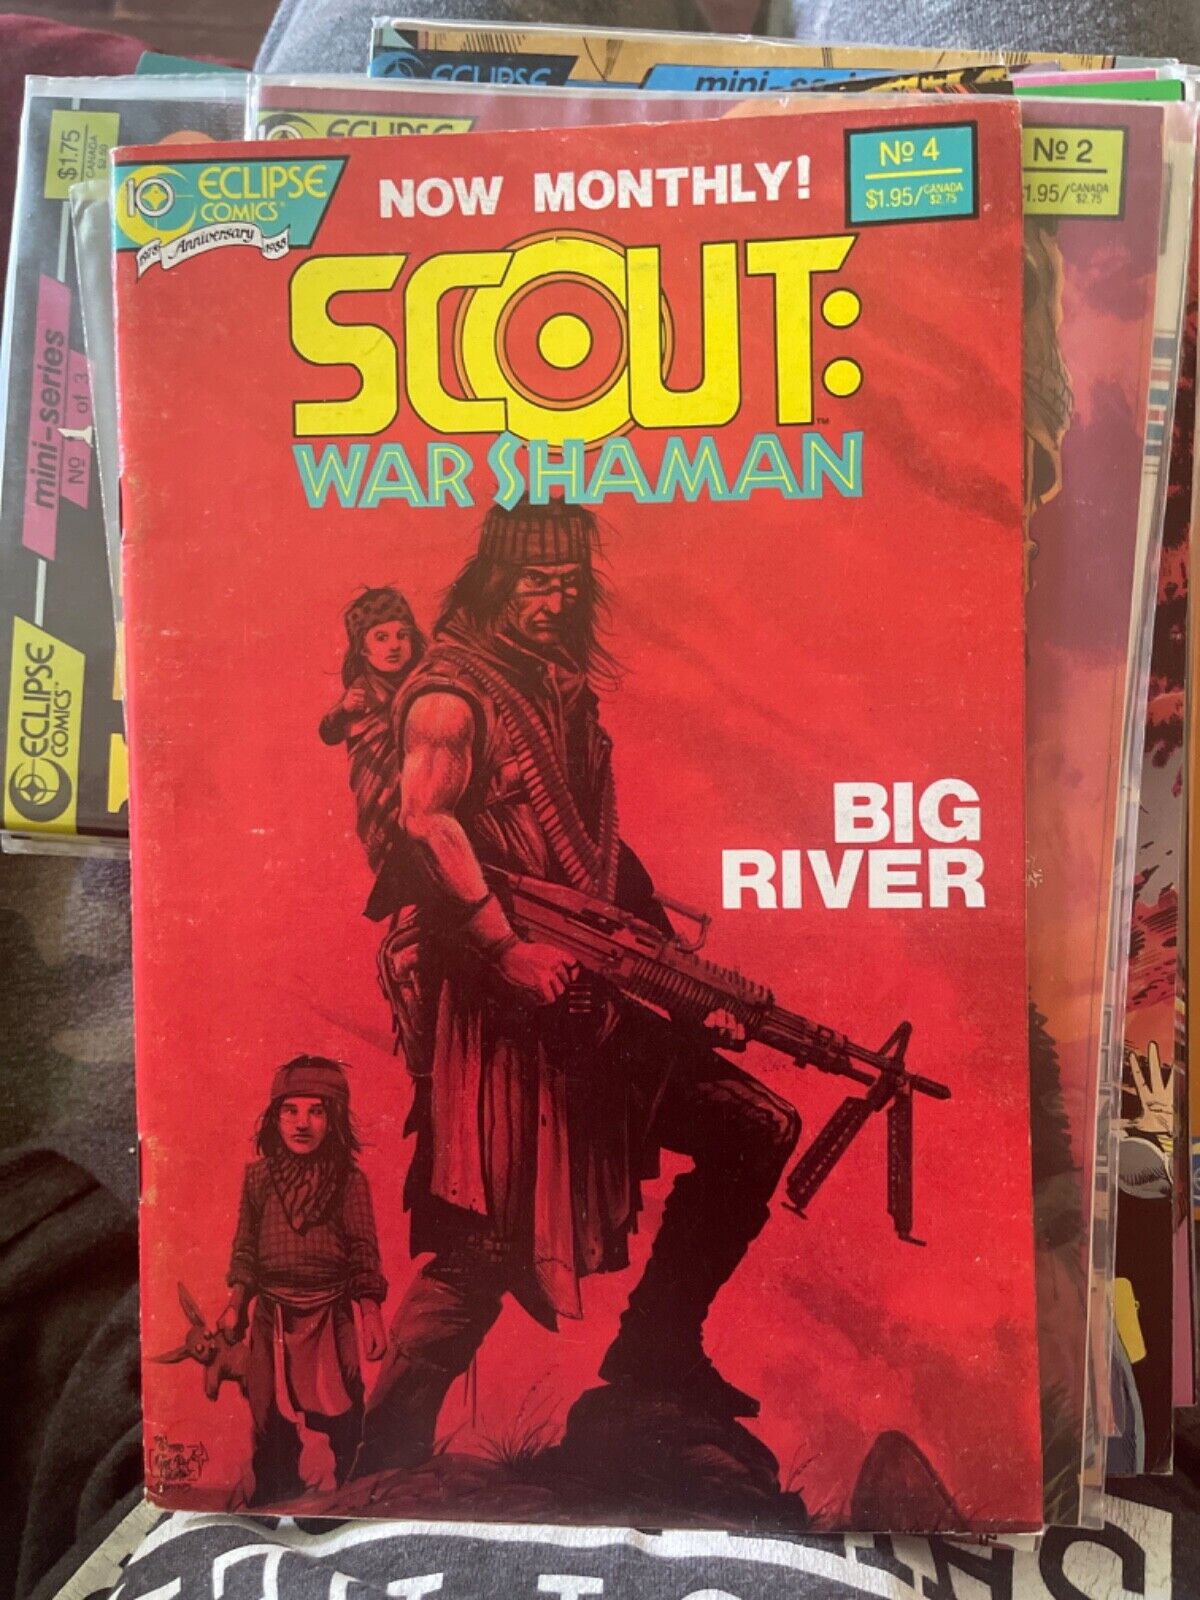 Cb11~comic book~Scout big river - no. 4 - Timothy Truman - 1988